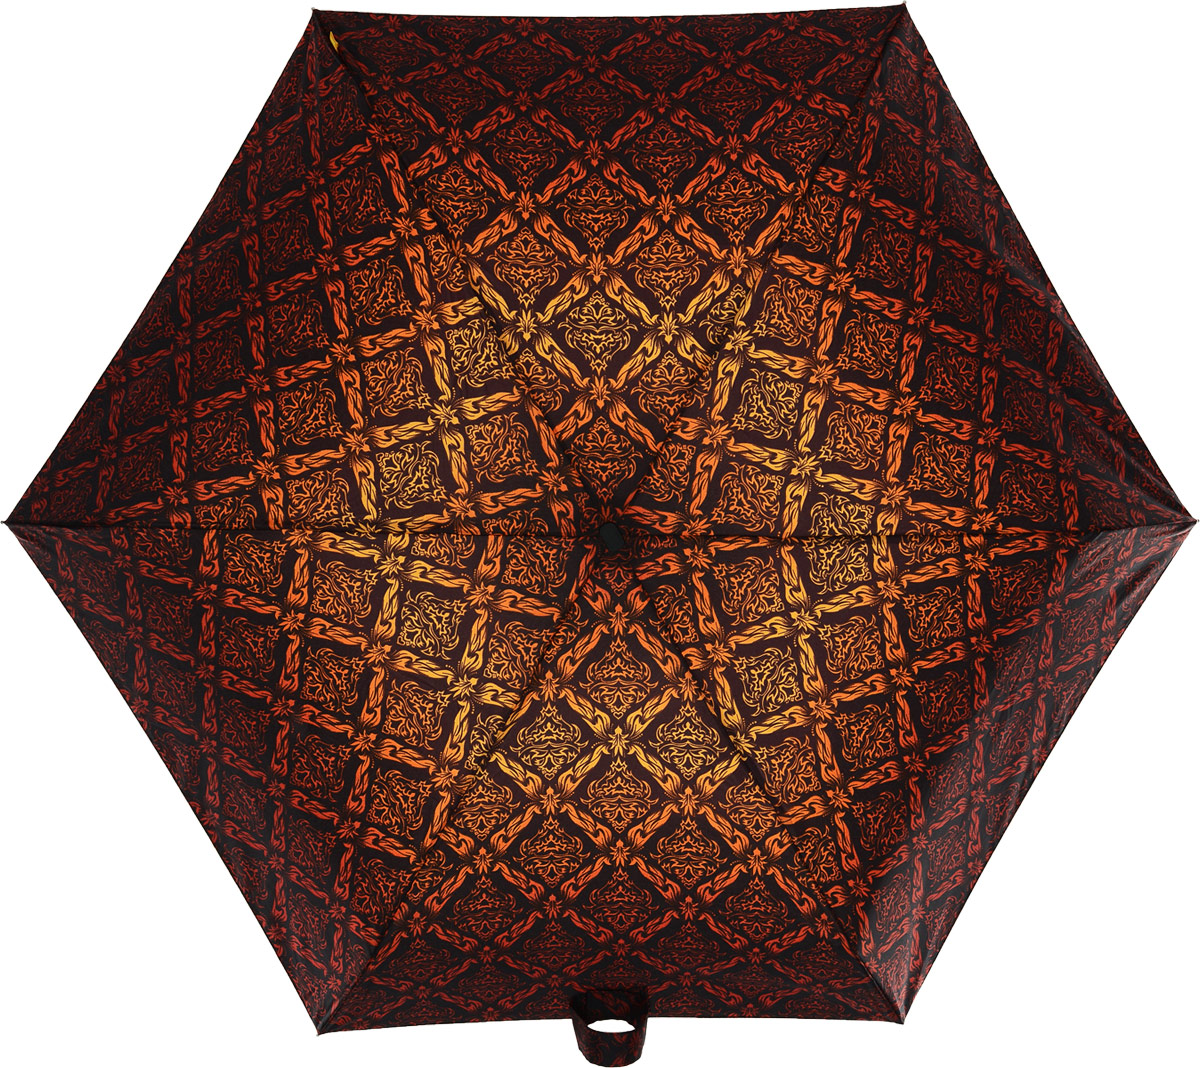 Зонт женский Zest, механический, 5 сложений, цвет: черный, коричневый, красный, оранжевый. 25518-273